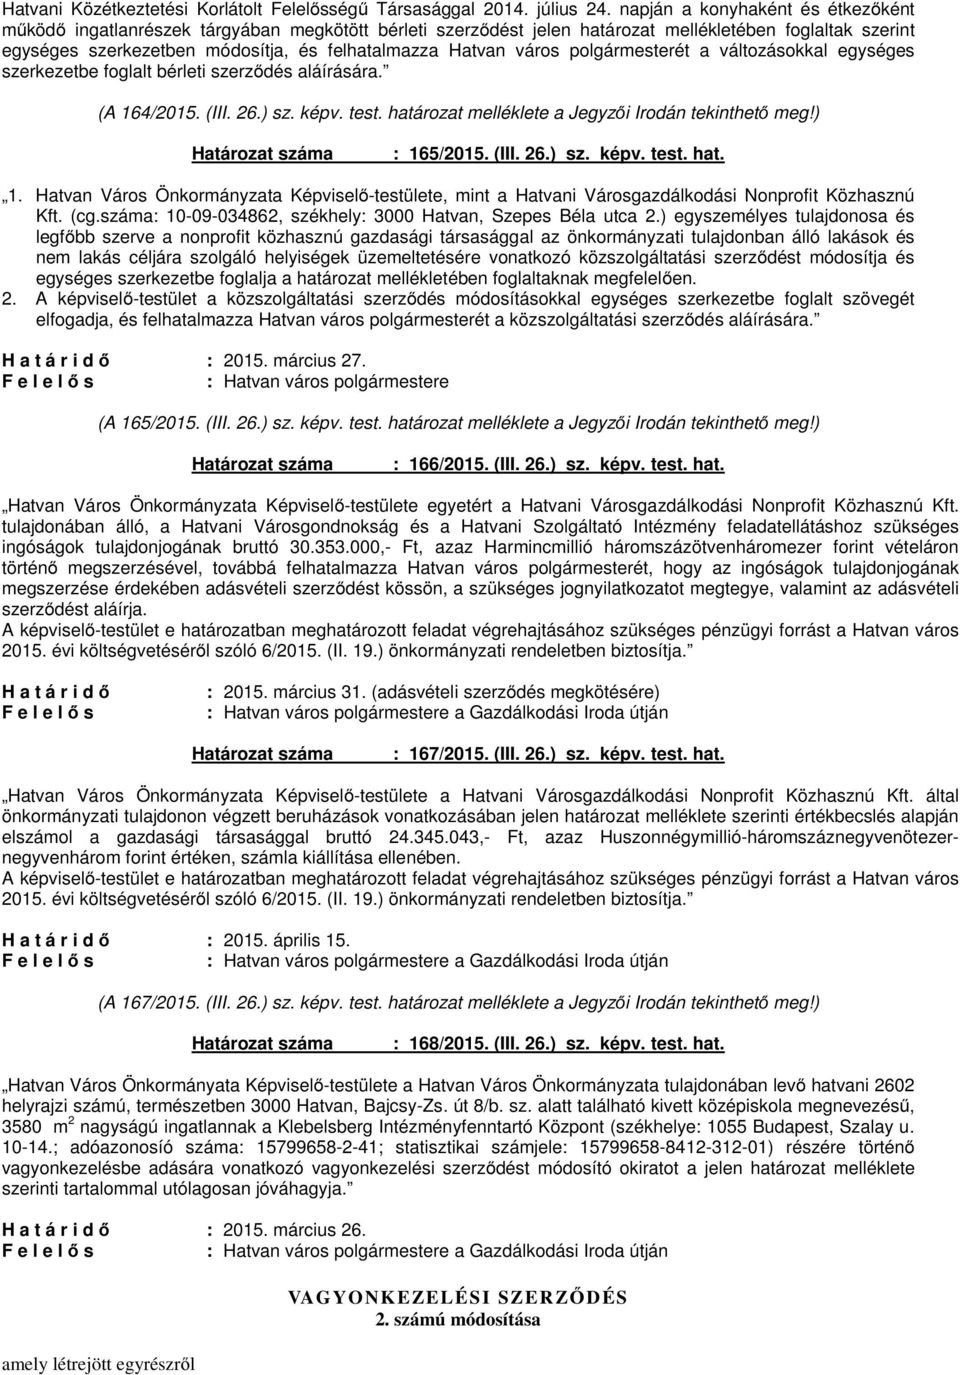 város polgármesterét a változásokkal egységes szerkezetbe foglalt bérleti szerződés aláírására. (A 164/2015. (III. 26.) sz. képv. test. határozat melléklete a Jegyzői Irodán tekinthető meg!